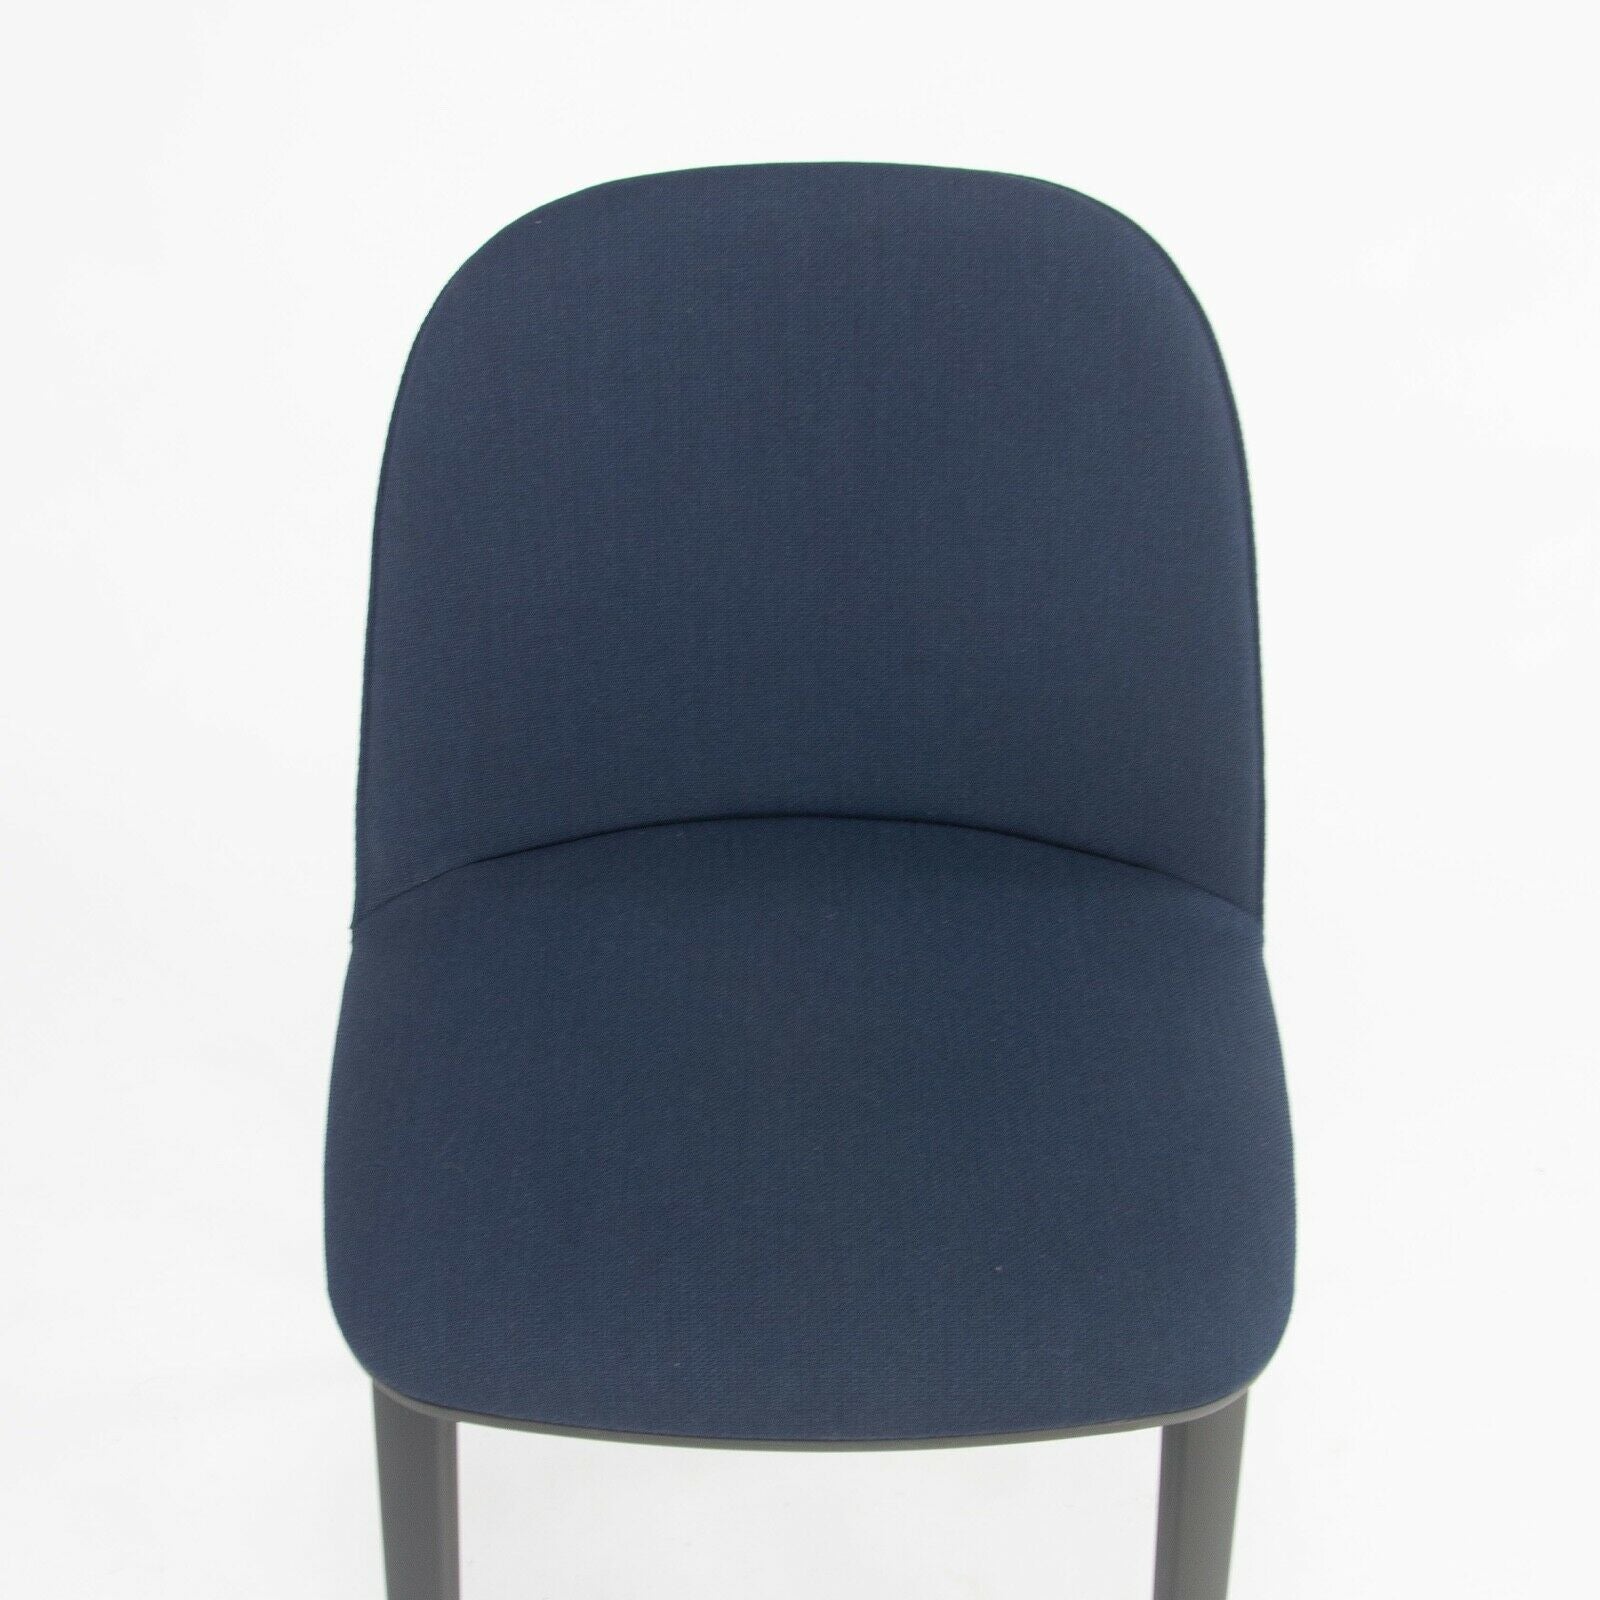 2018 Vitra Softshell Side Chair w/ Dark Blue Fabric by Ronan & Erwan Bouroullec